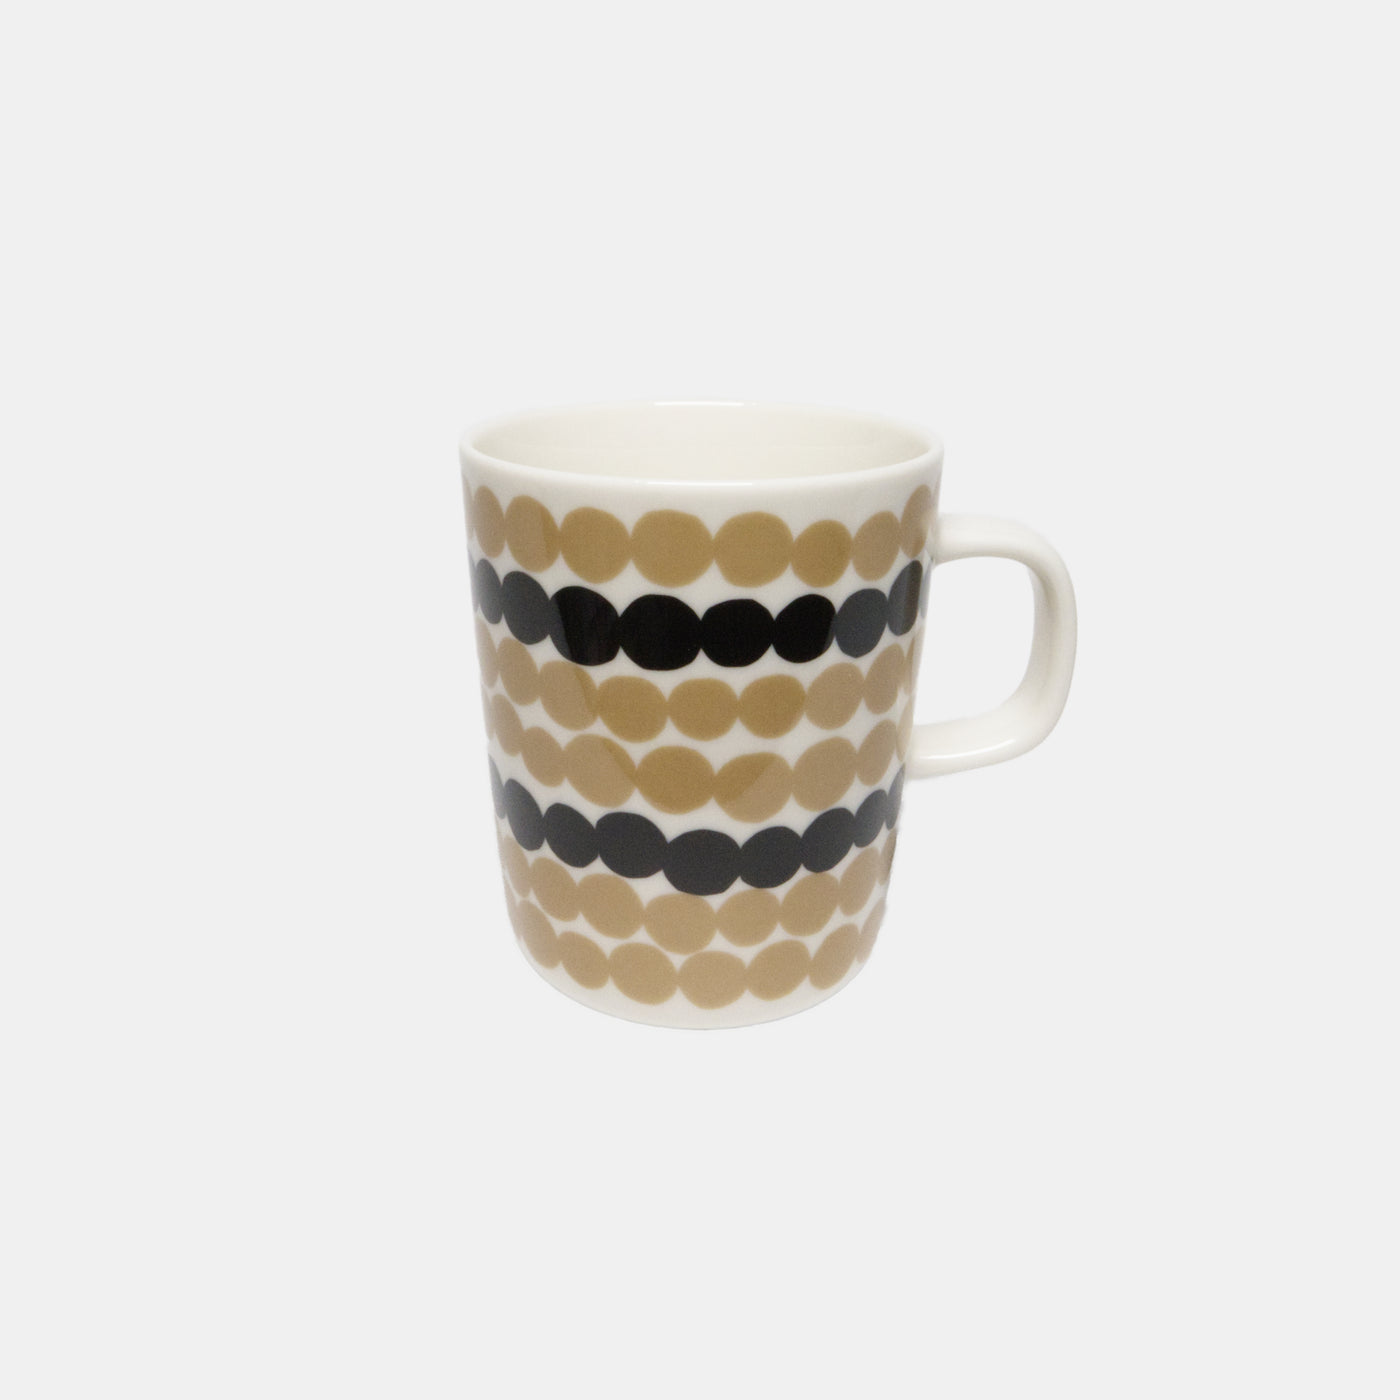 Oiva / Siirtolapuutarha mug 2,5 dl - beige, black